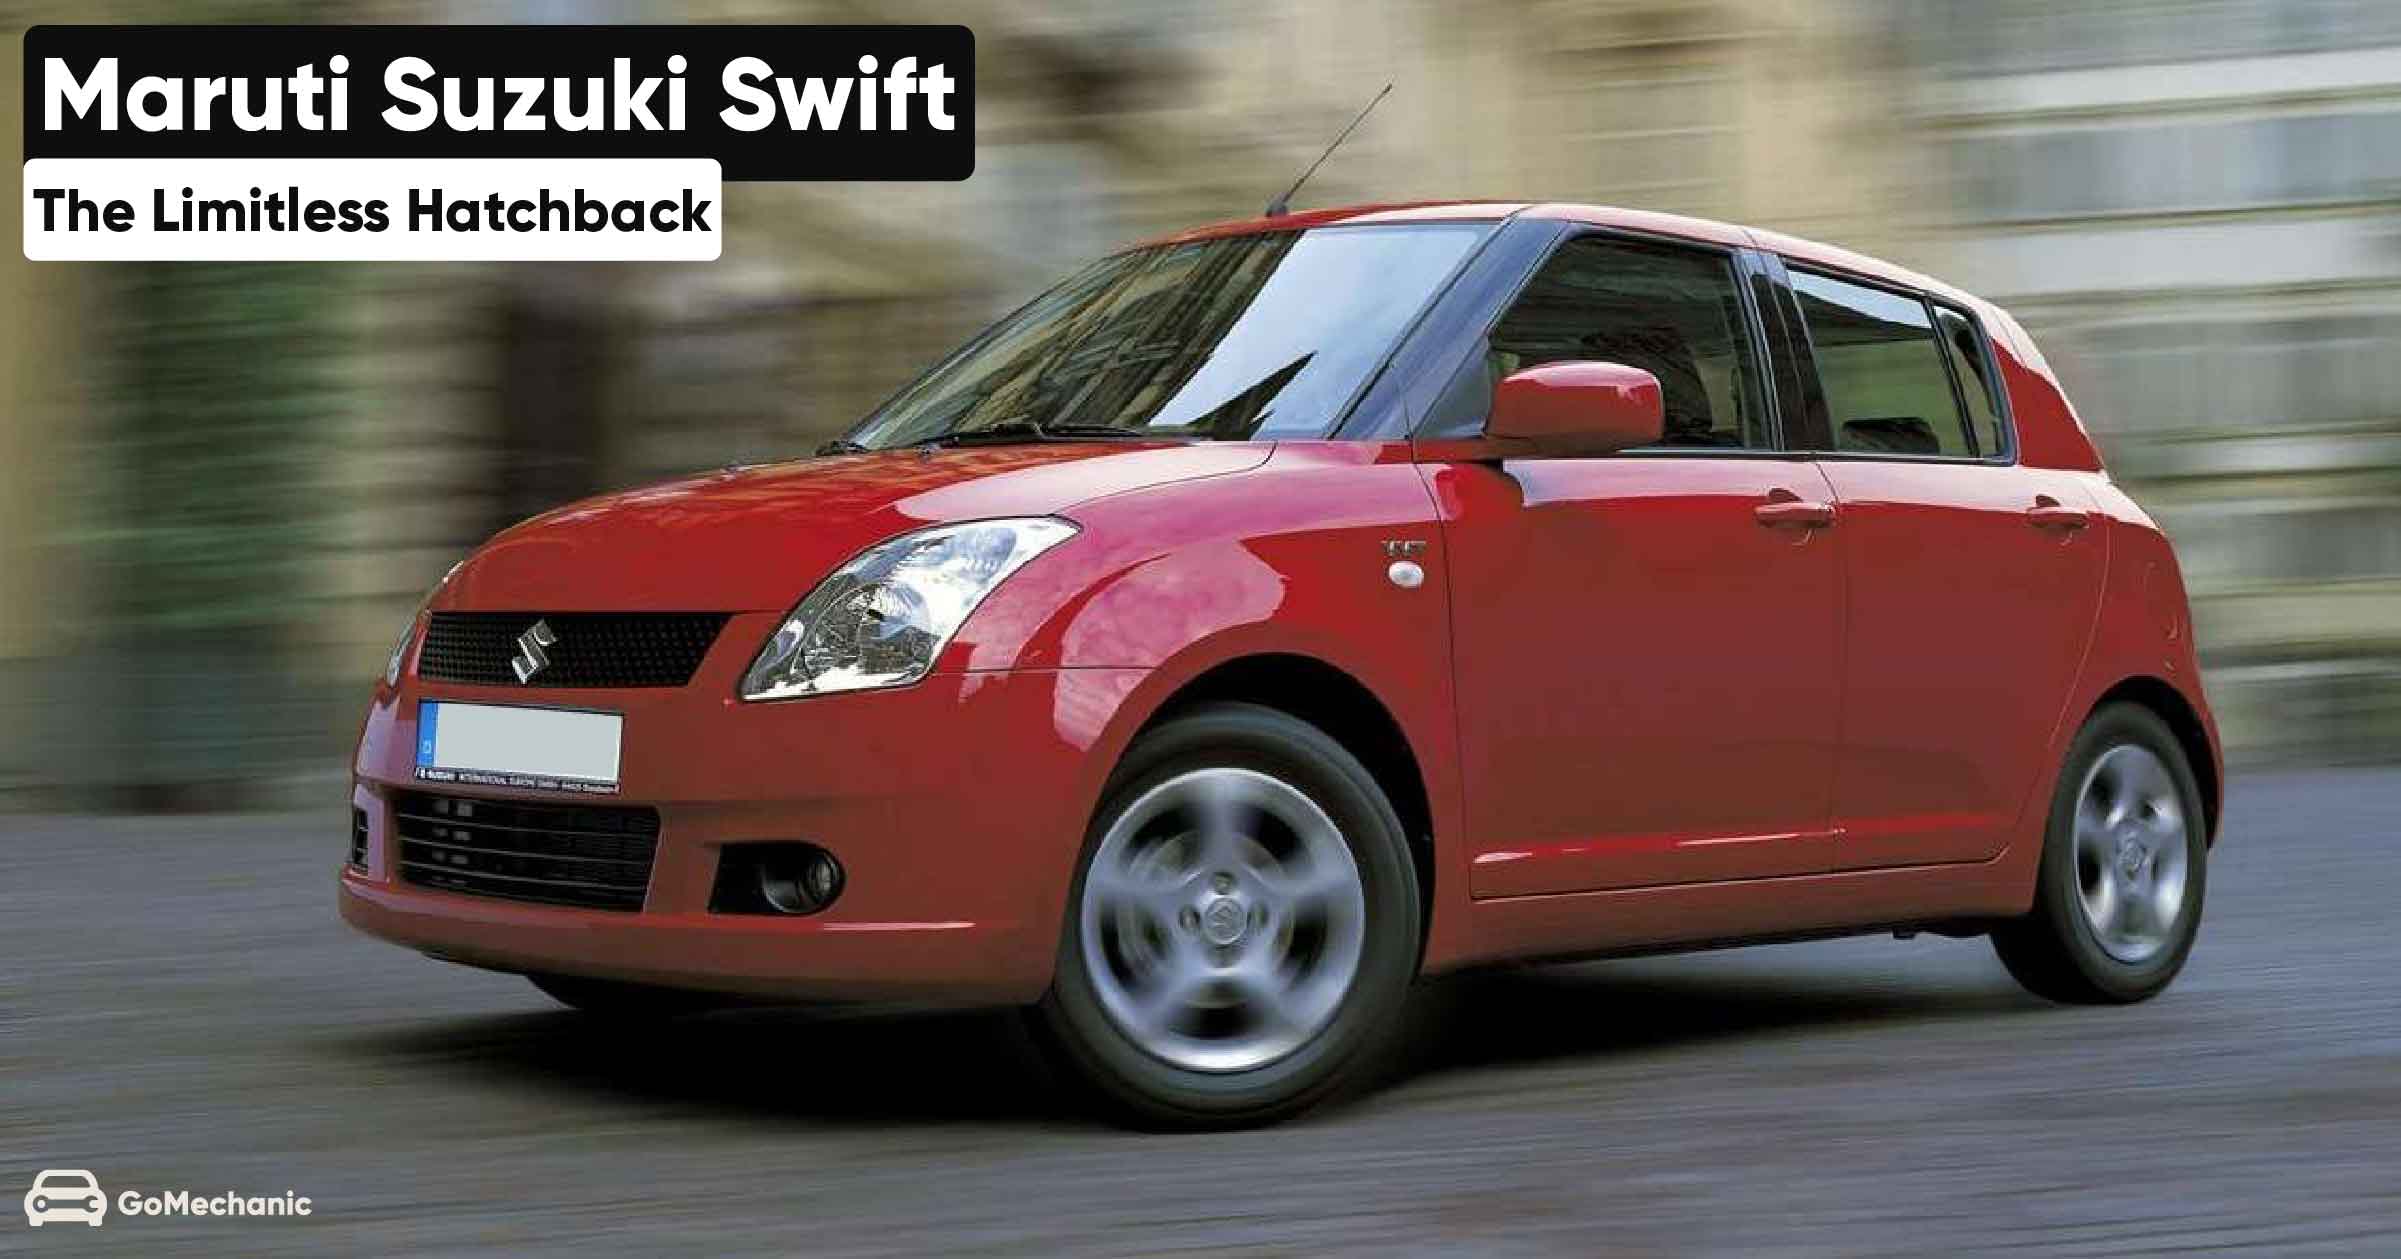 Maruti Suzuki Swift The Limitless Hatchback